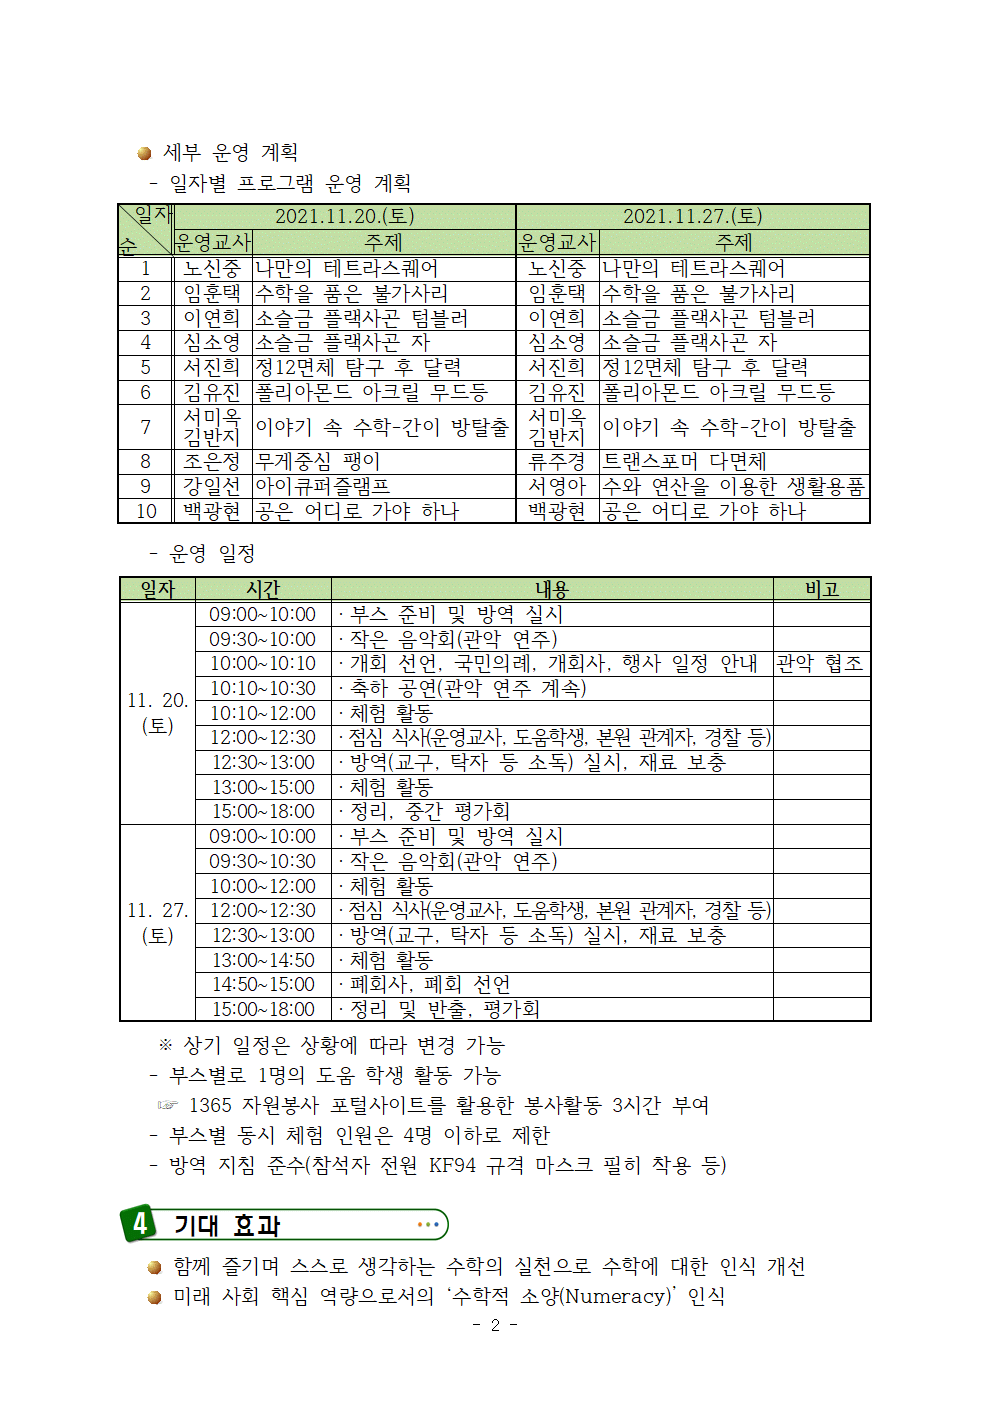 제12회 전북수학체험한마당 과학교육원 행사 운영 계획002